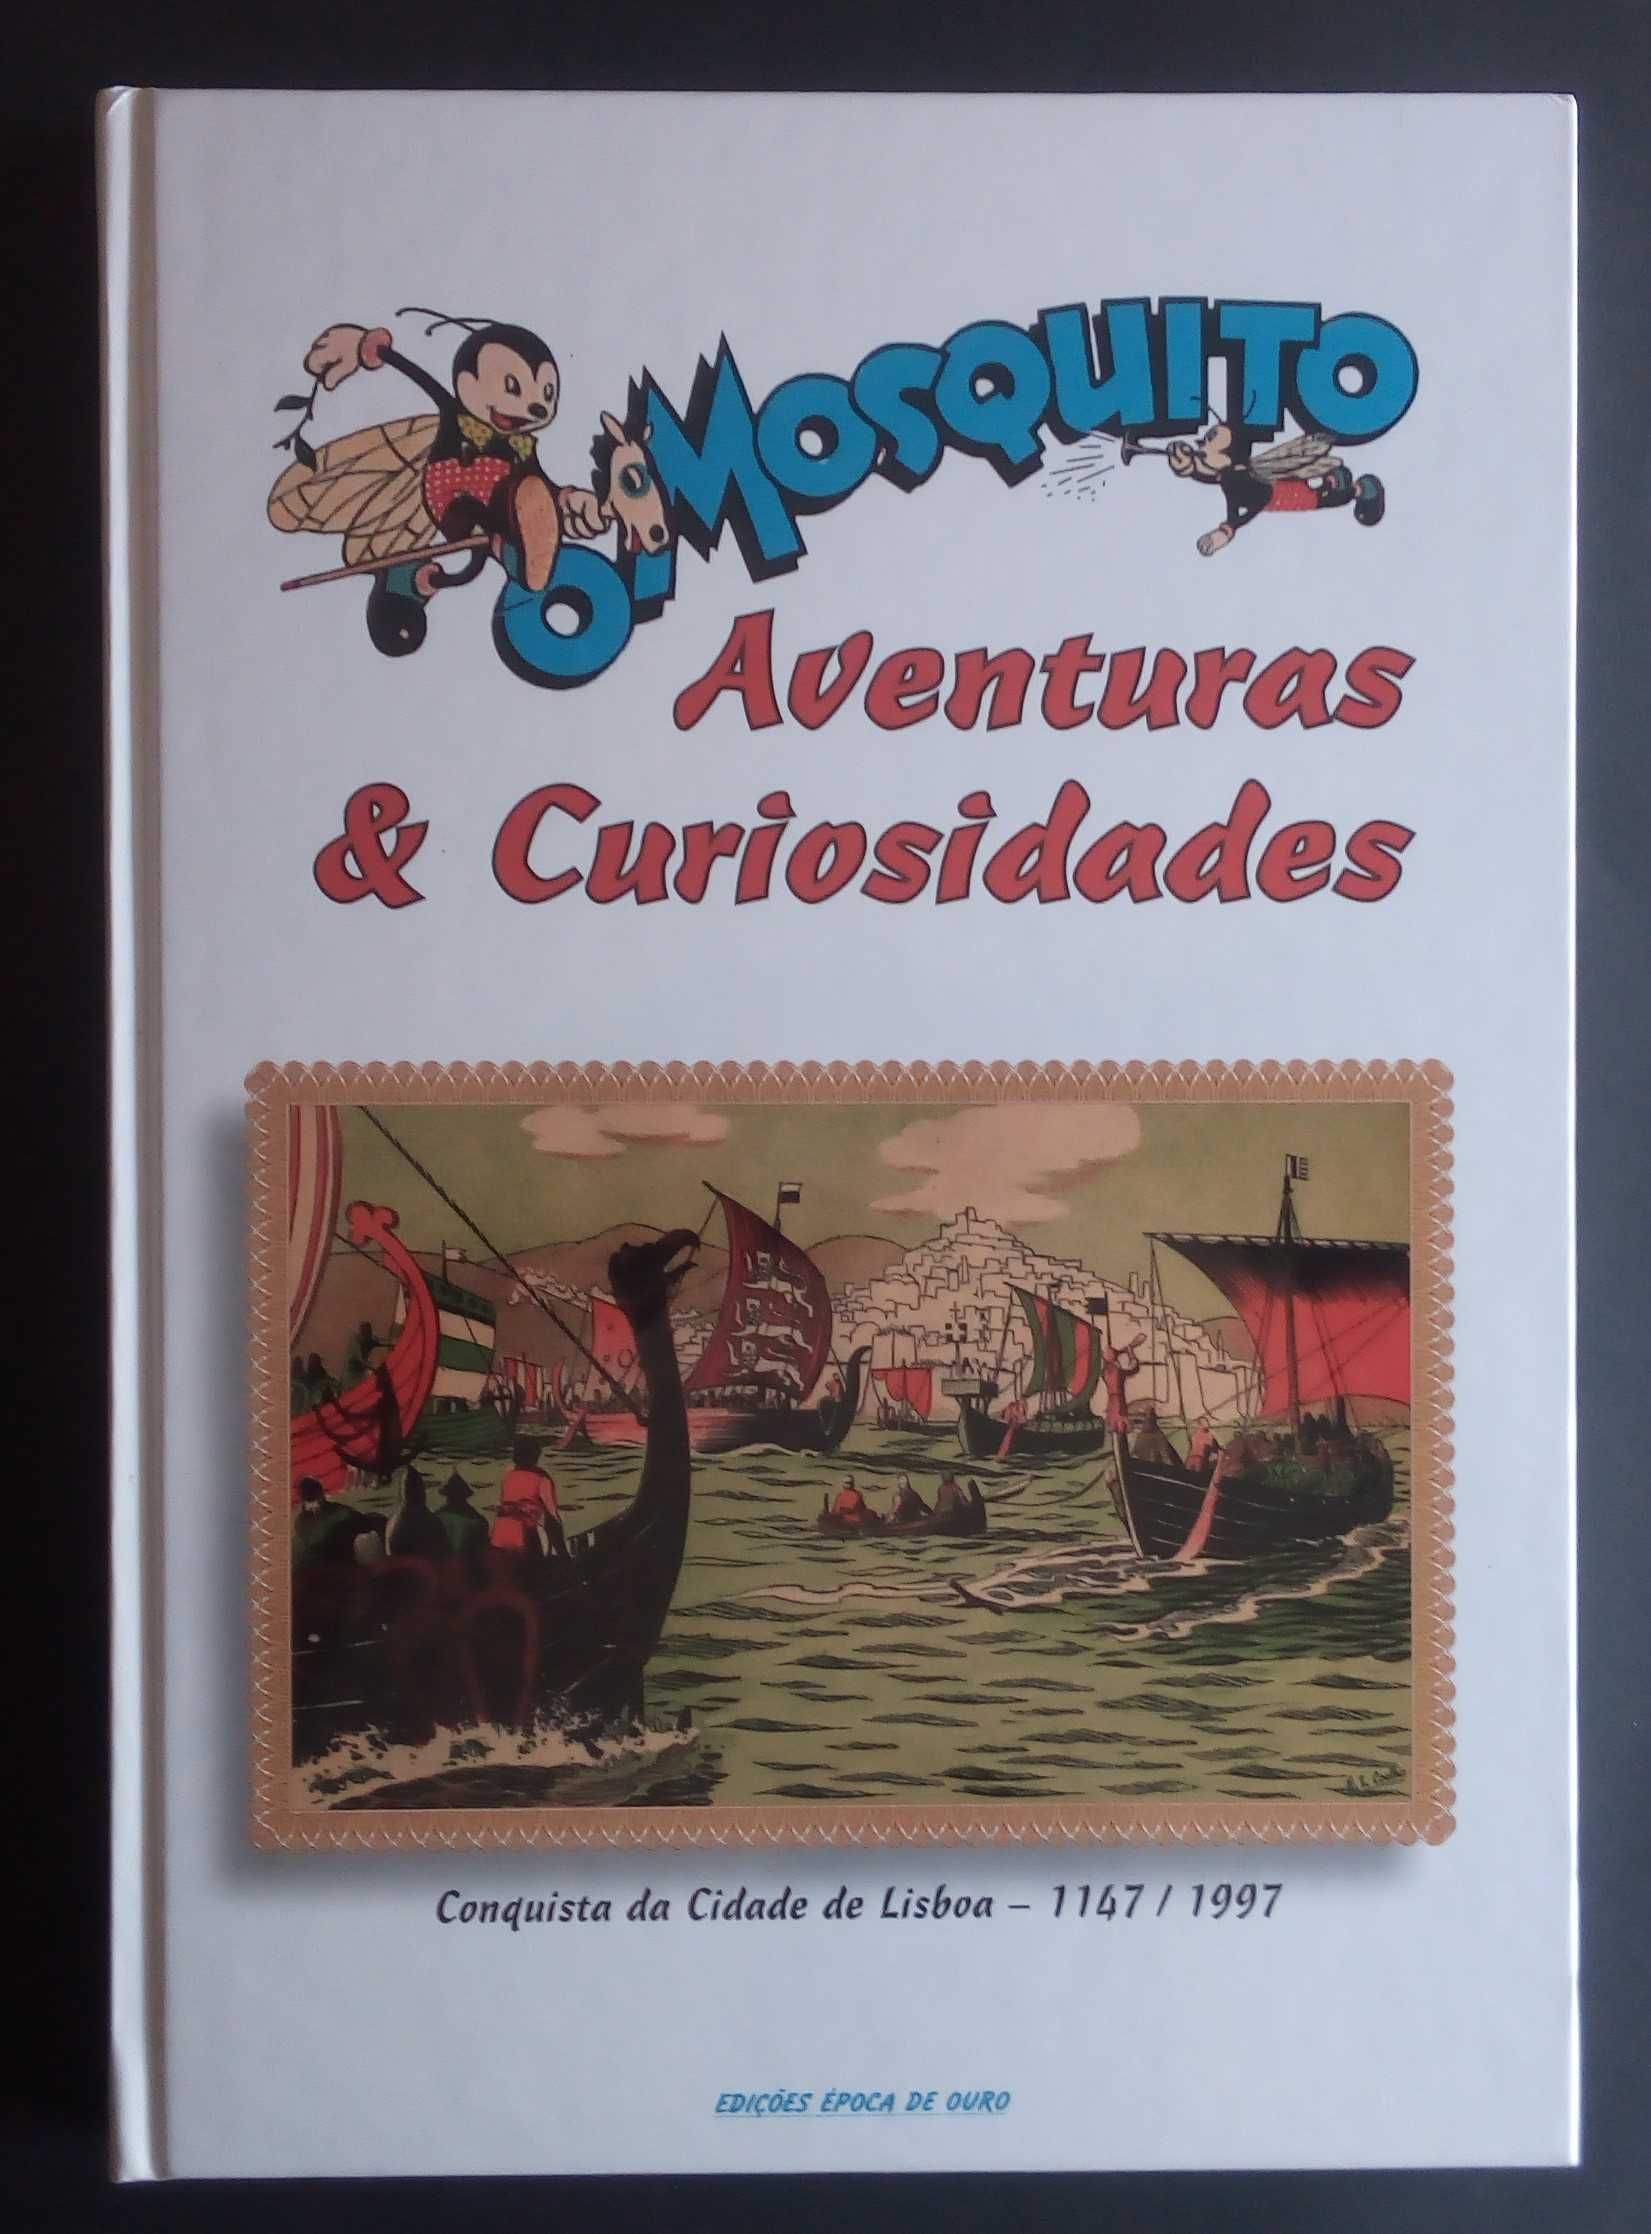 o mosquito aventuras e curiosidades